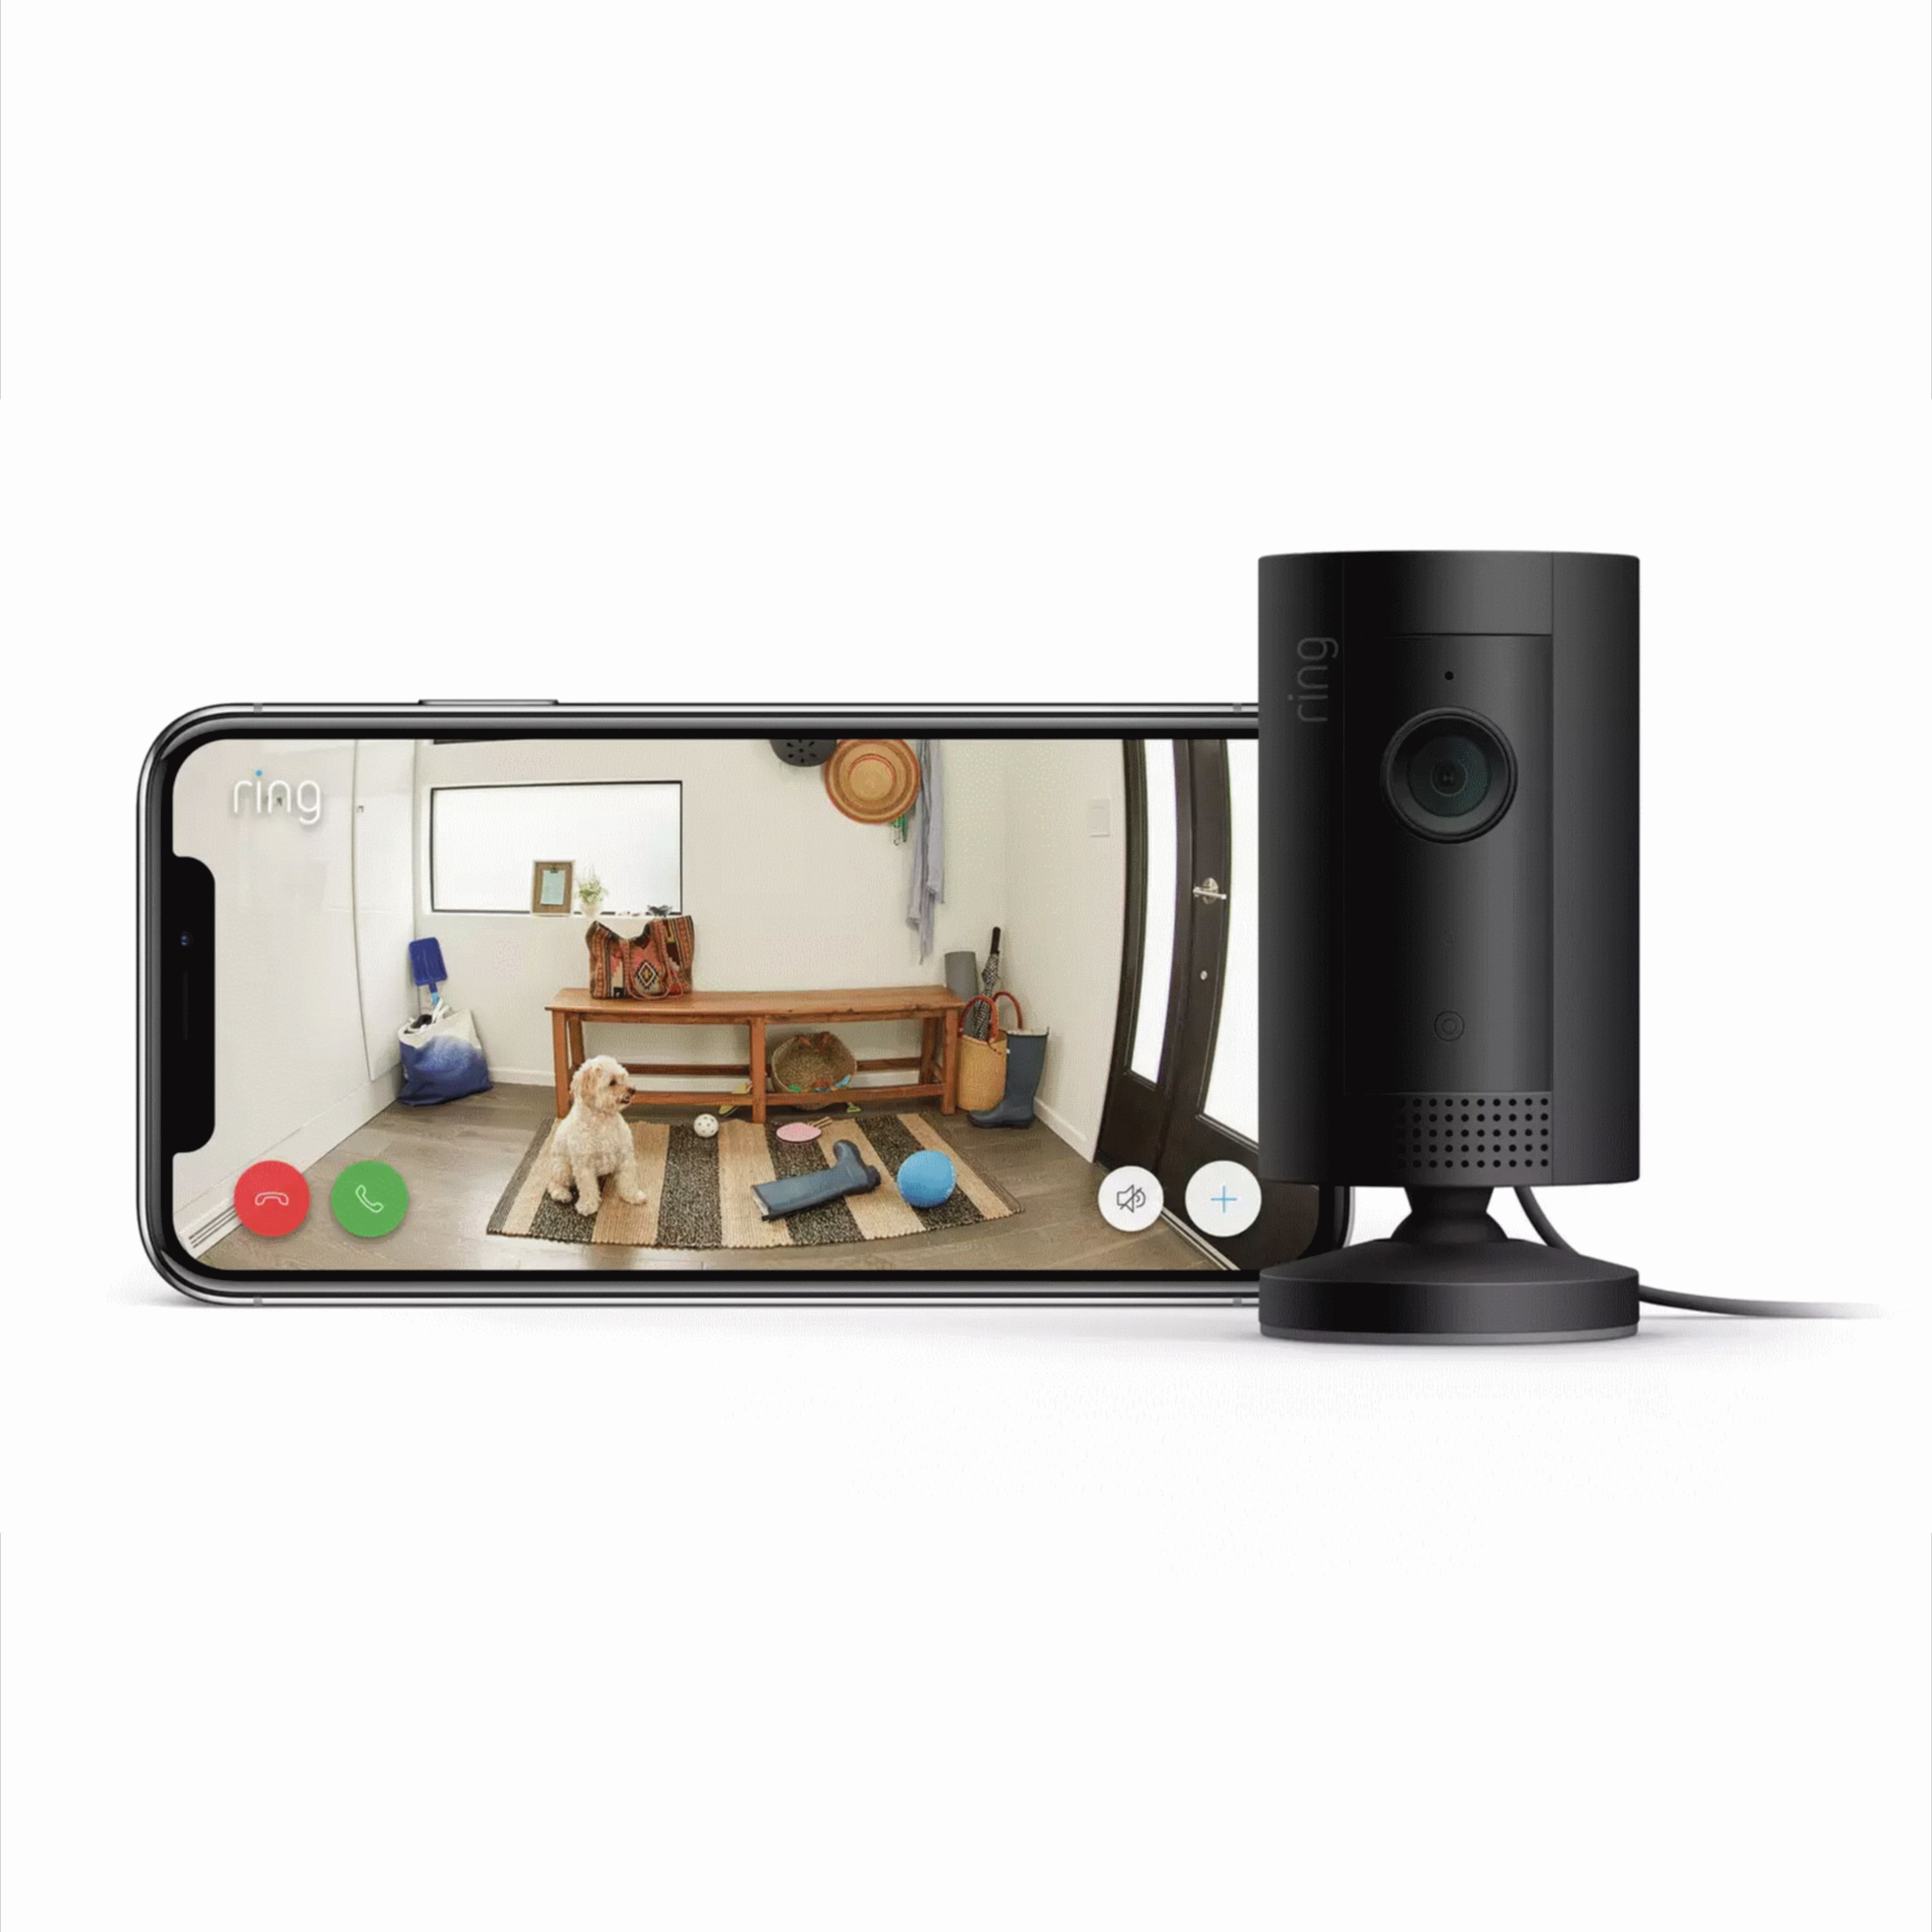 Ring Wired Indoor Tilt adjustable Smart camera in Black